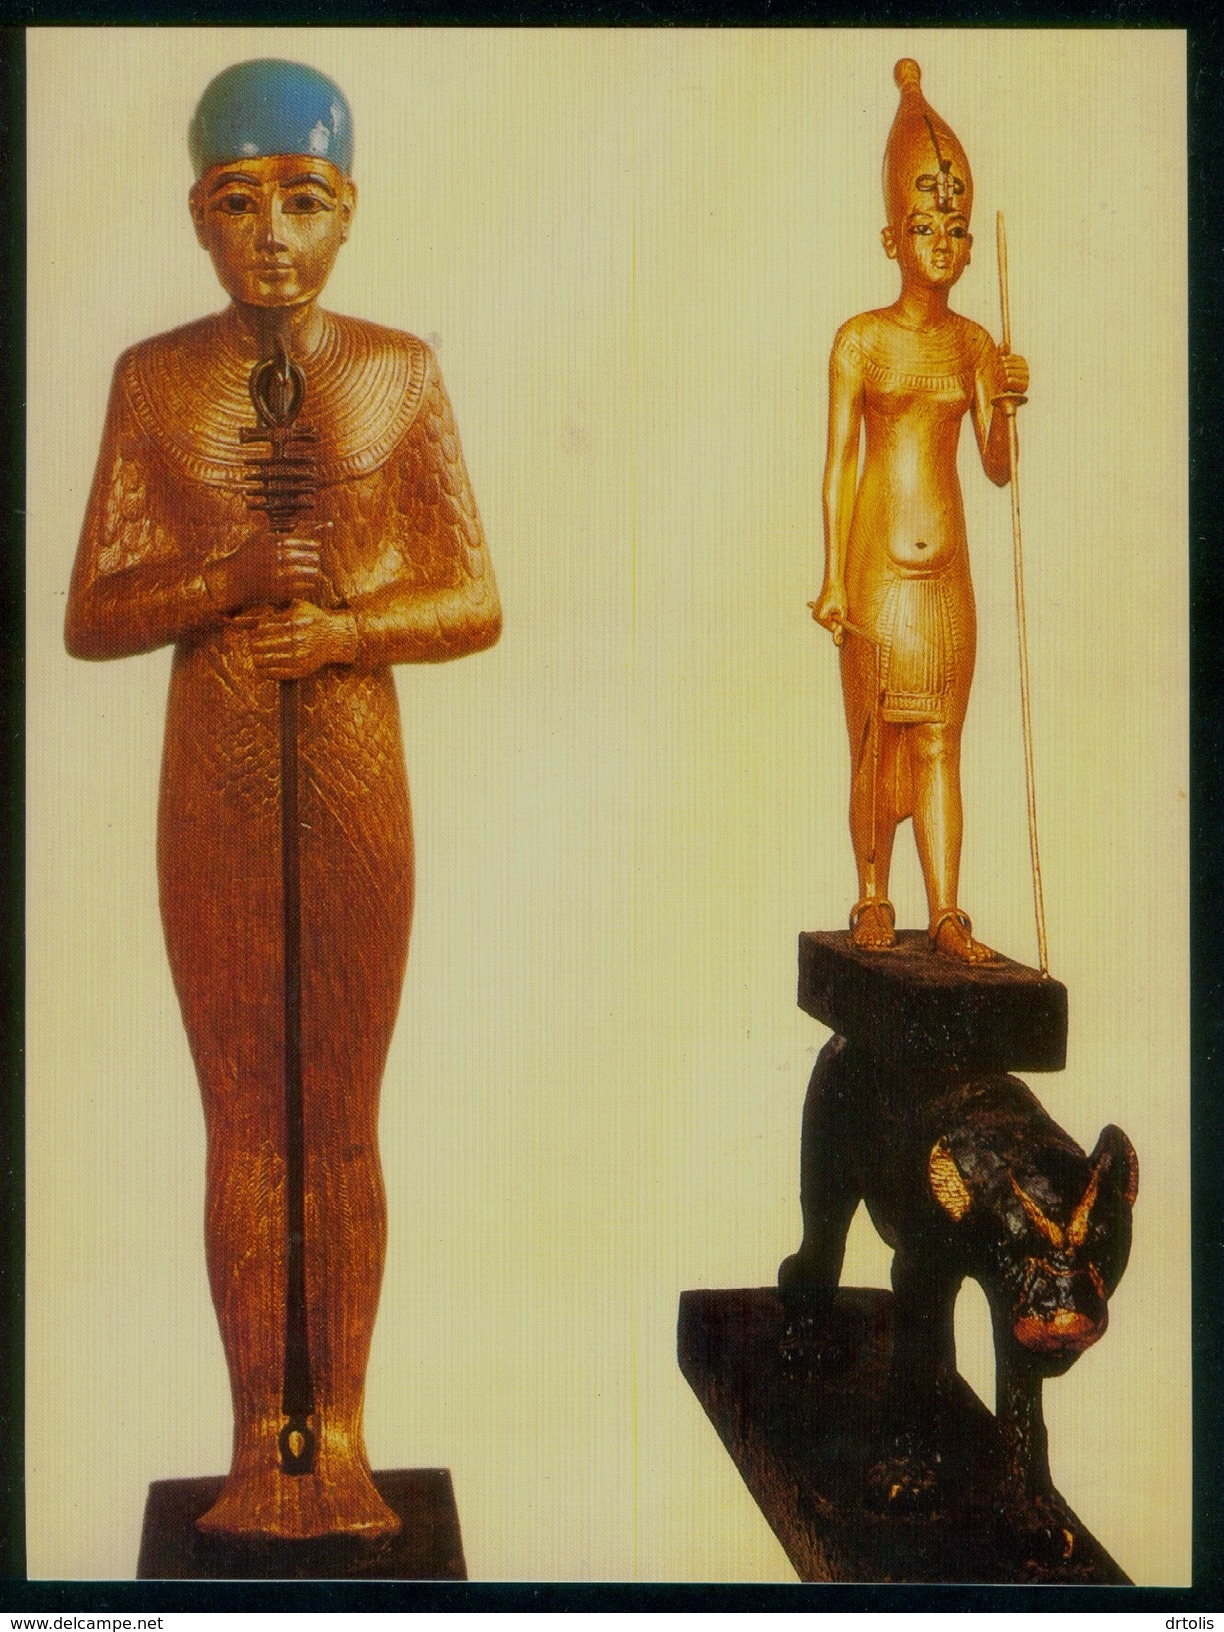 EGYPT / EGYPTOLOGY / EGYPTIAN MUSEUM / TUTANKHAMUN'S TREASURES / PTAH / THE KING OF UPPER EGYPT - Musea